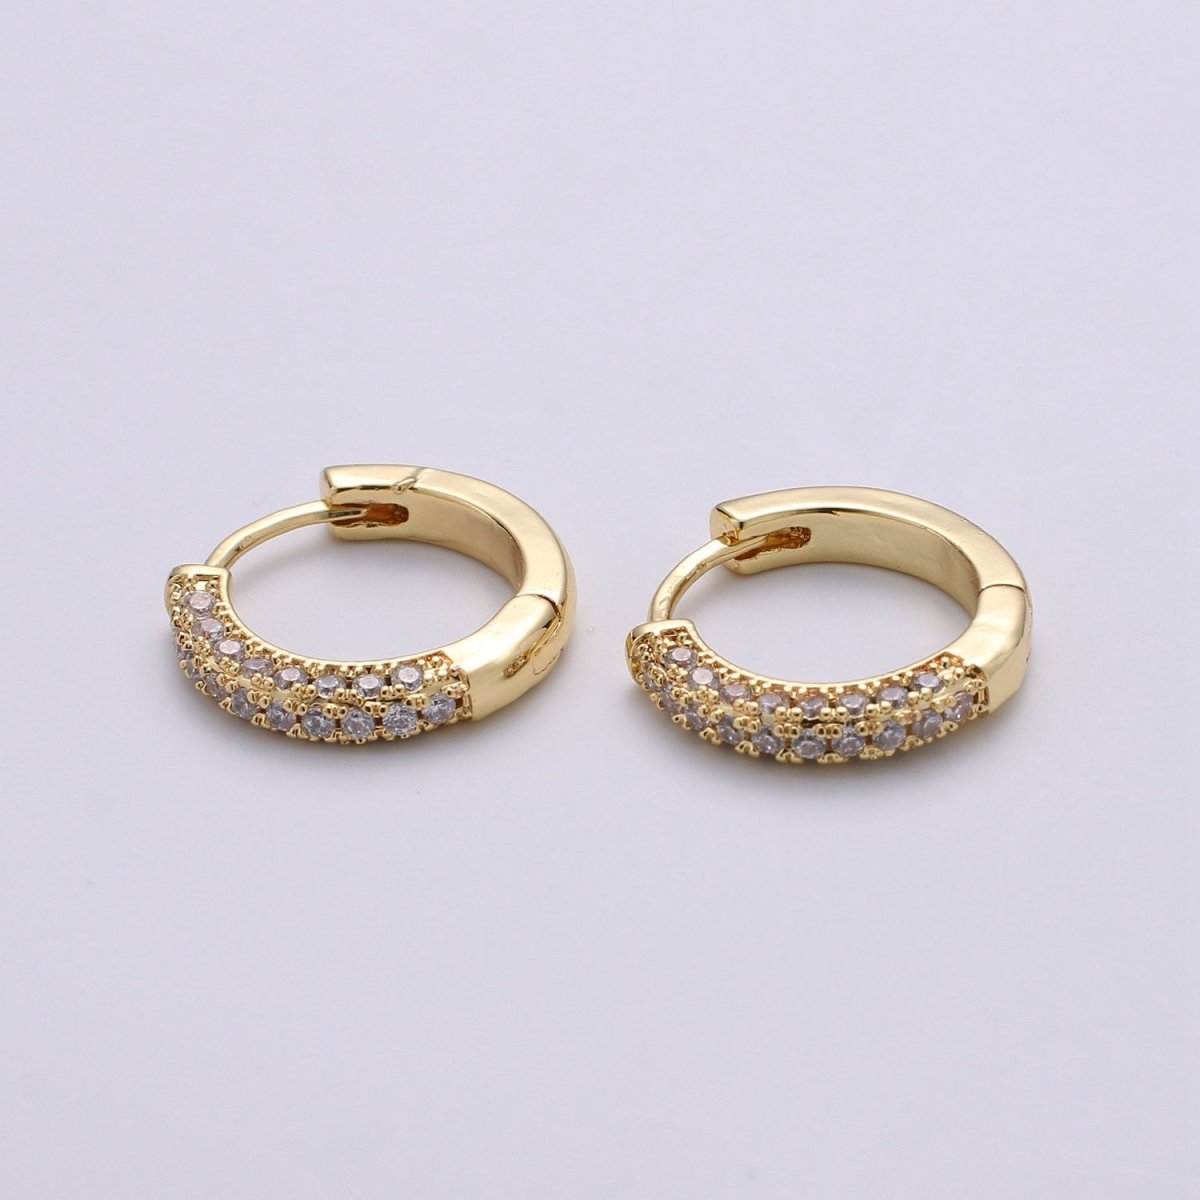 14k Gold Filled Minimalist Earring Dainty CZ Huggie Hoop Earrings Silver Earring 18mm Q-113 - Q-115 - DLUXCA